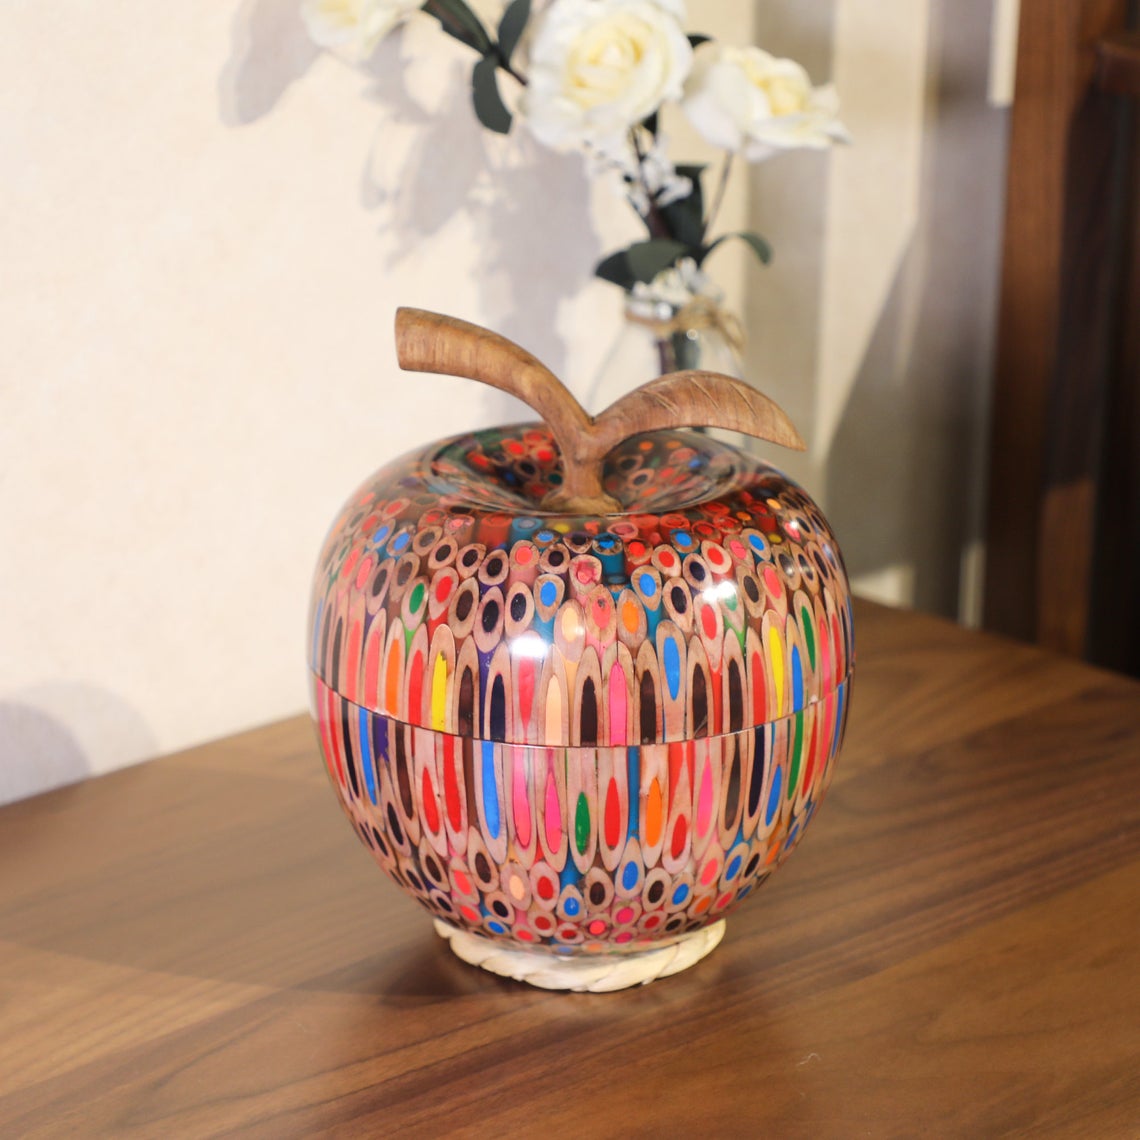 Decorative Colored-pencil Happy Apple Box